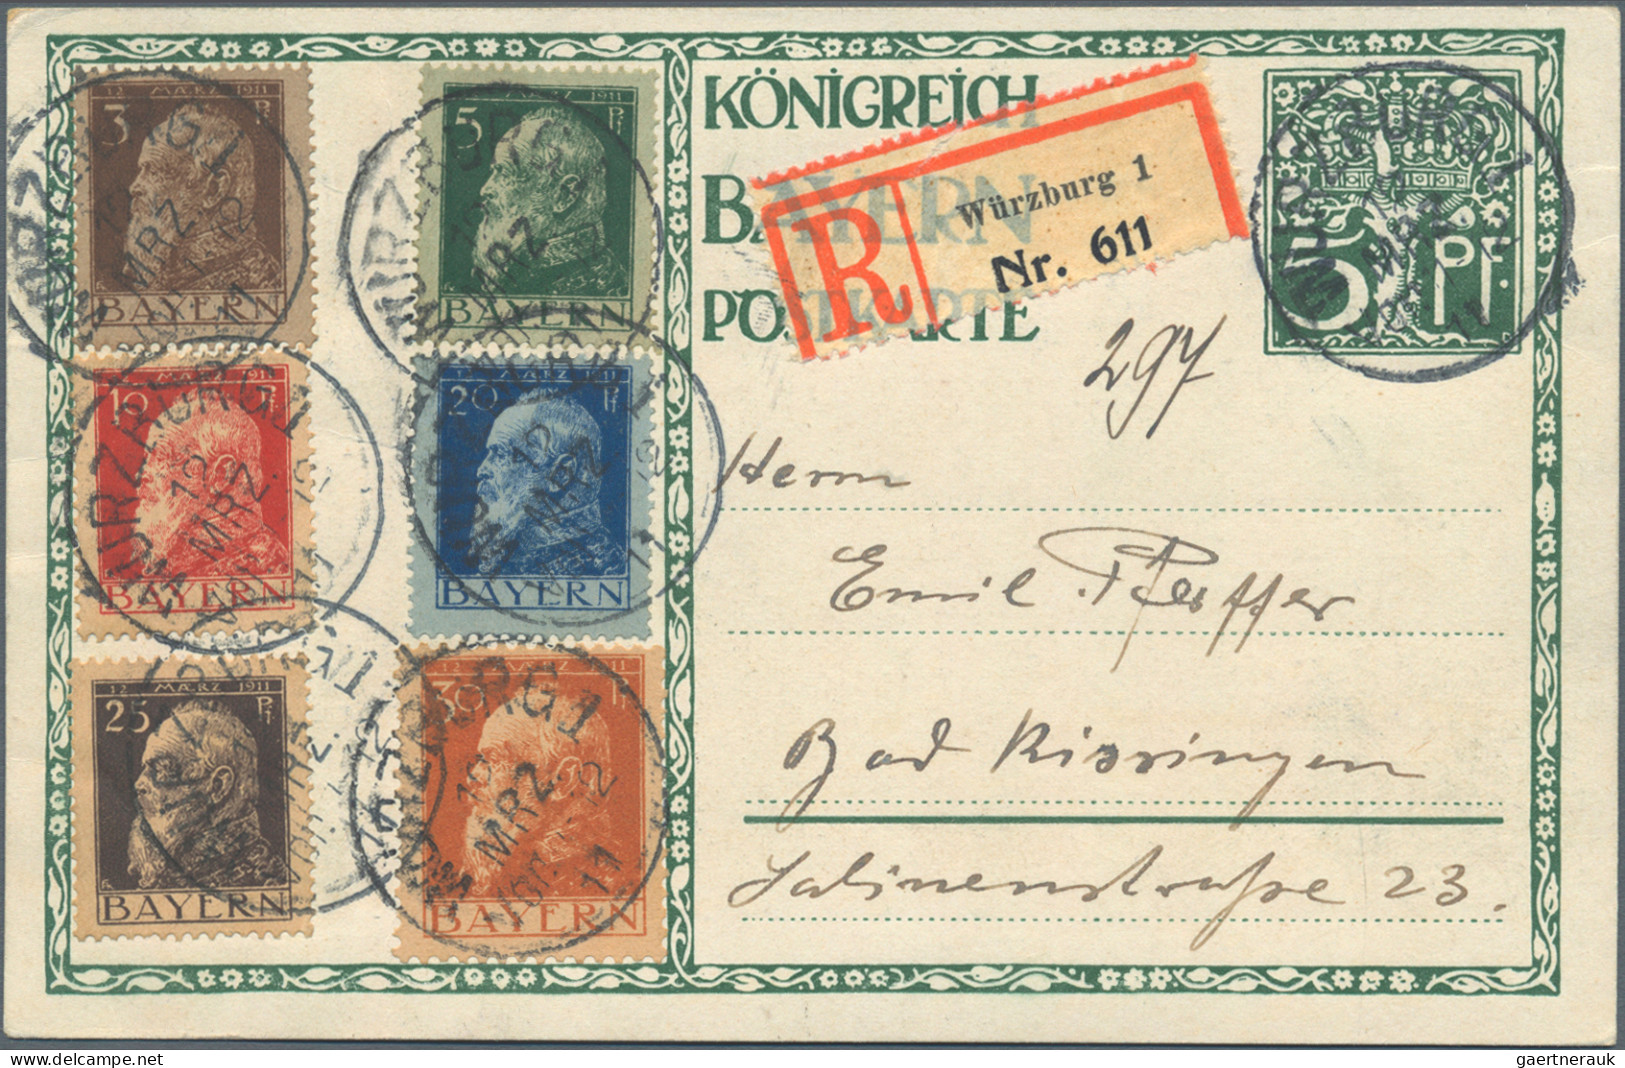 Bayern - Marken und Briefe: 1850/1919, Partie von ca. 53 Briefen und Karten, etw